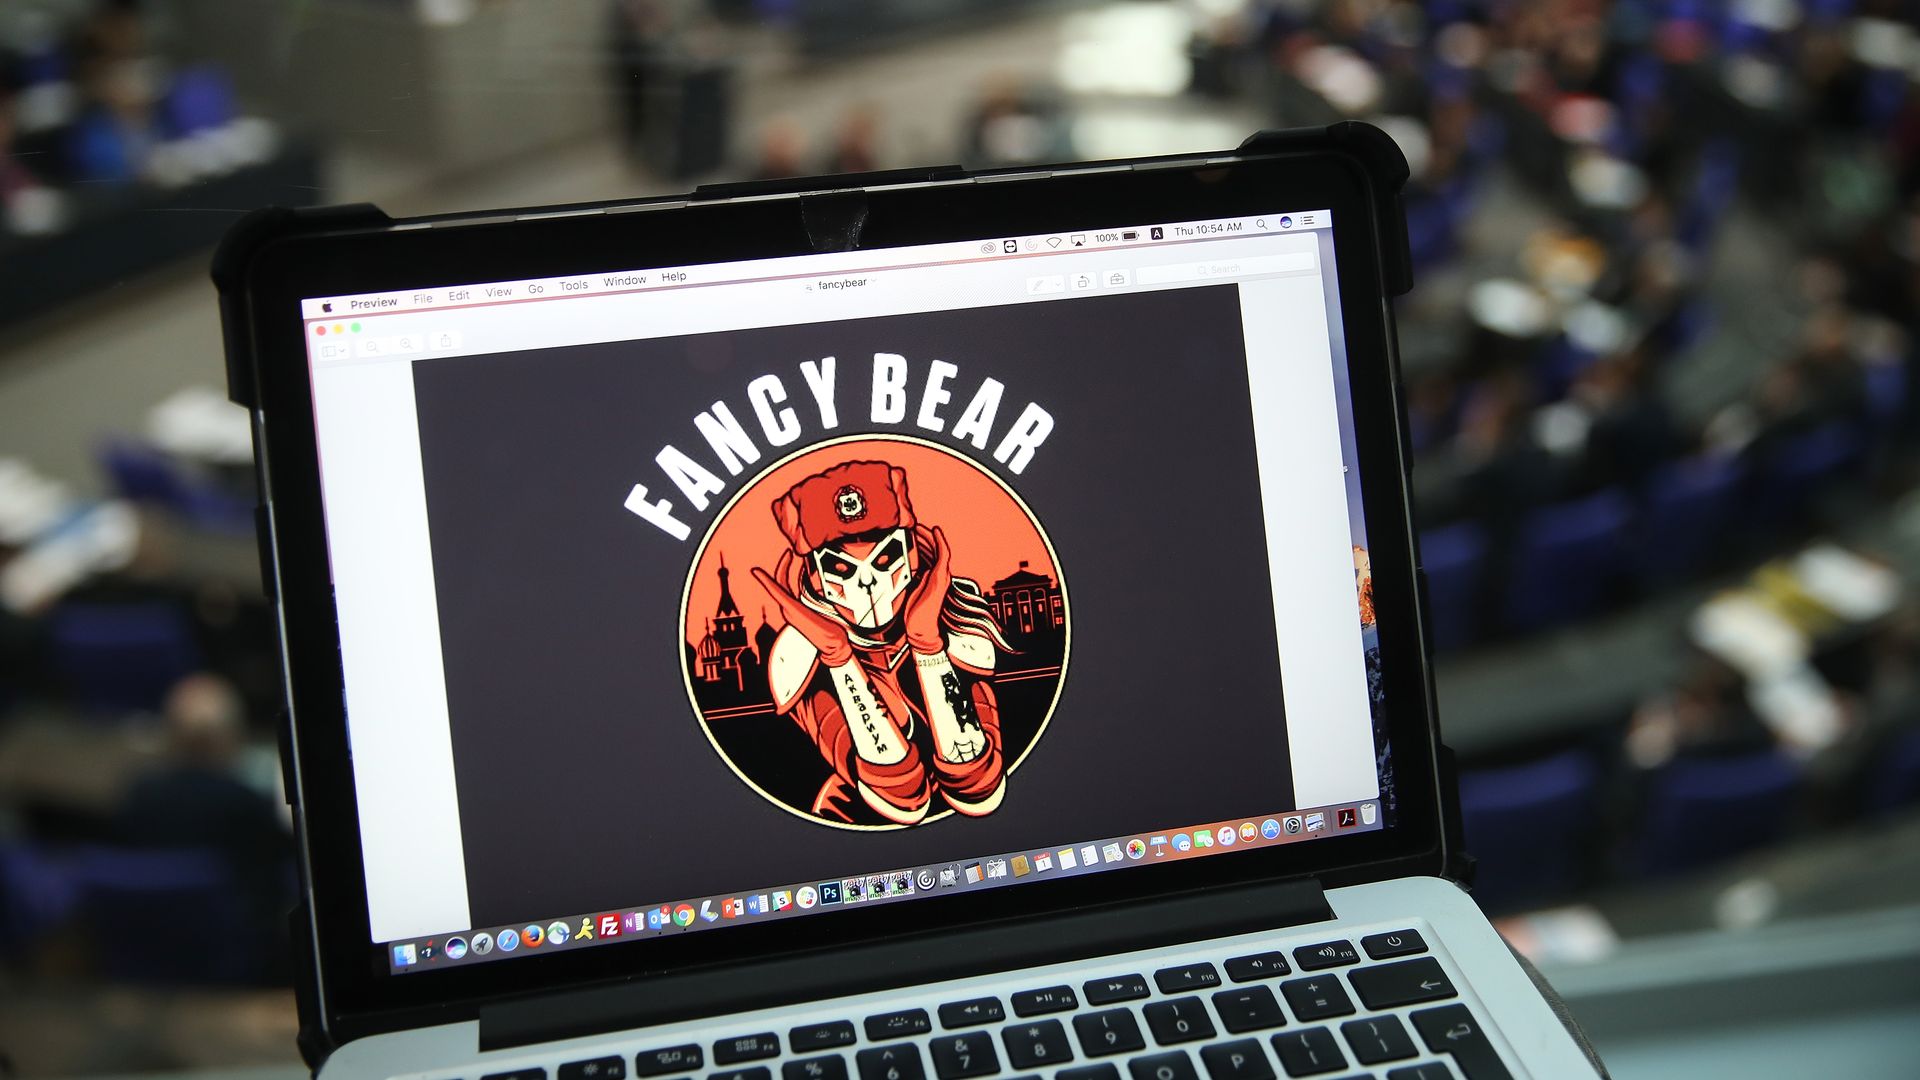 Laptop with Fancy Bear logo